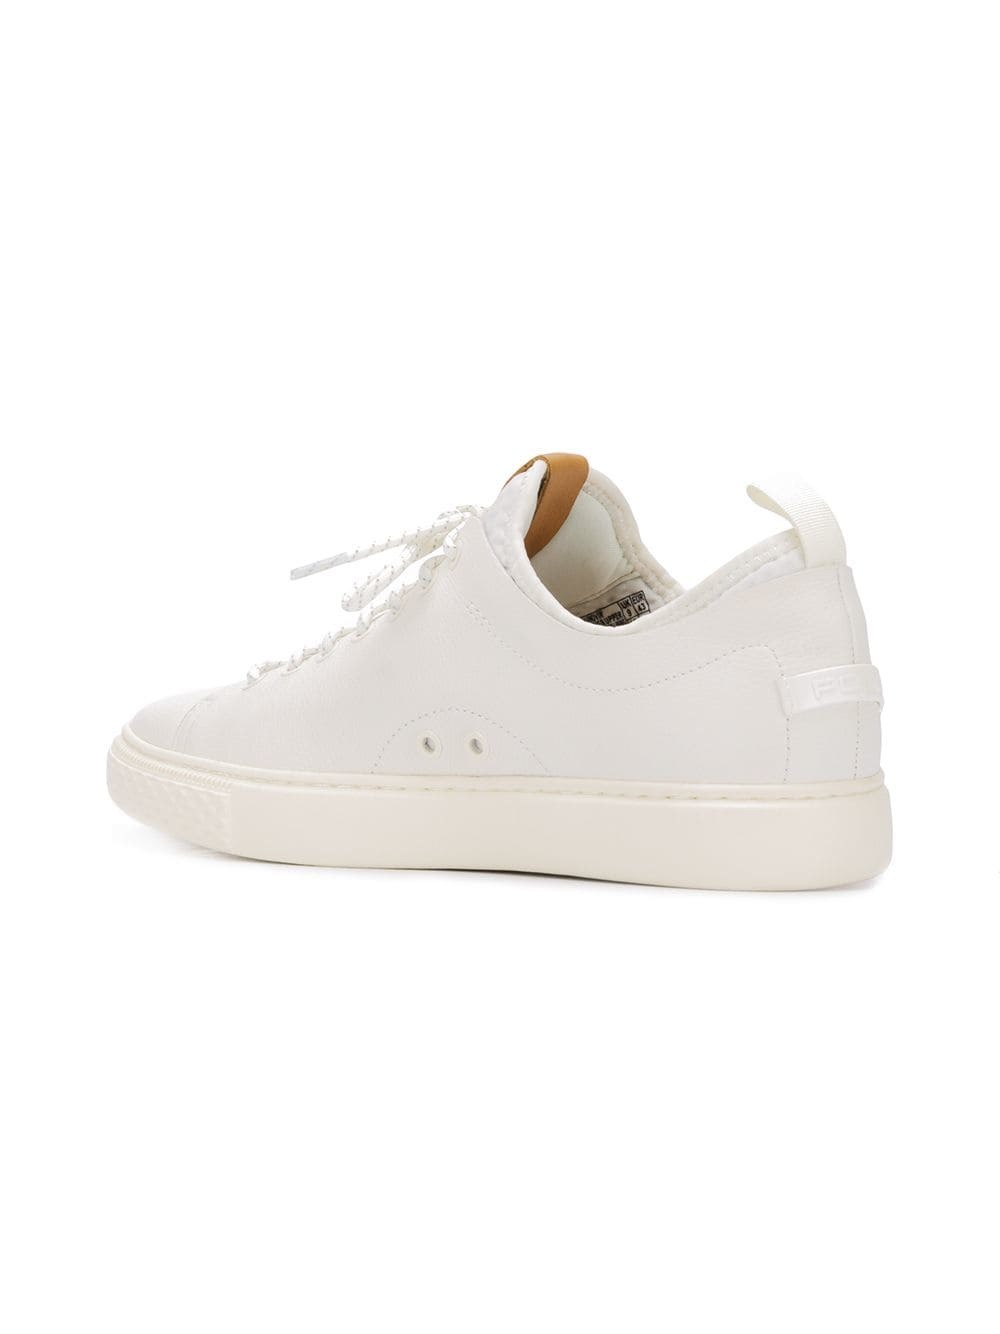 Polo Ralph Lauren Dunovin Sneakers, $63  | Lookastic